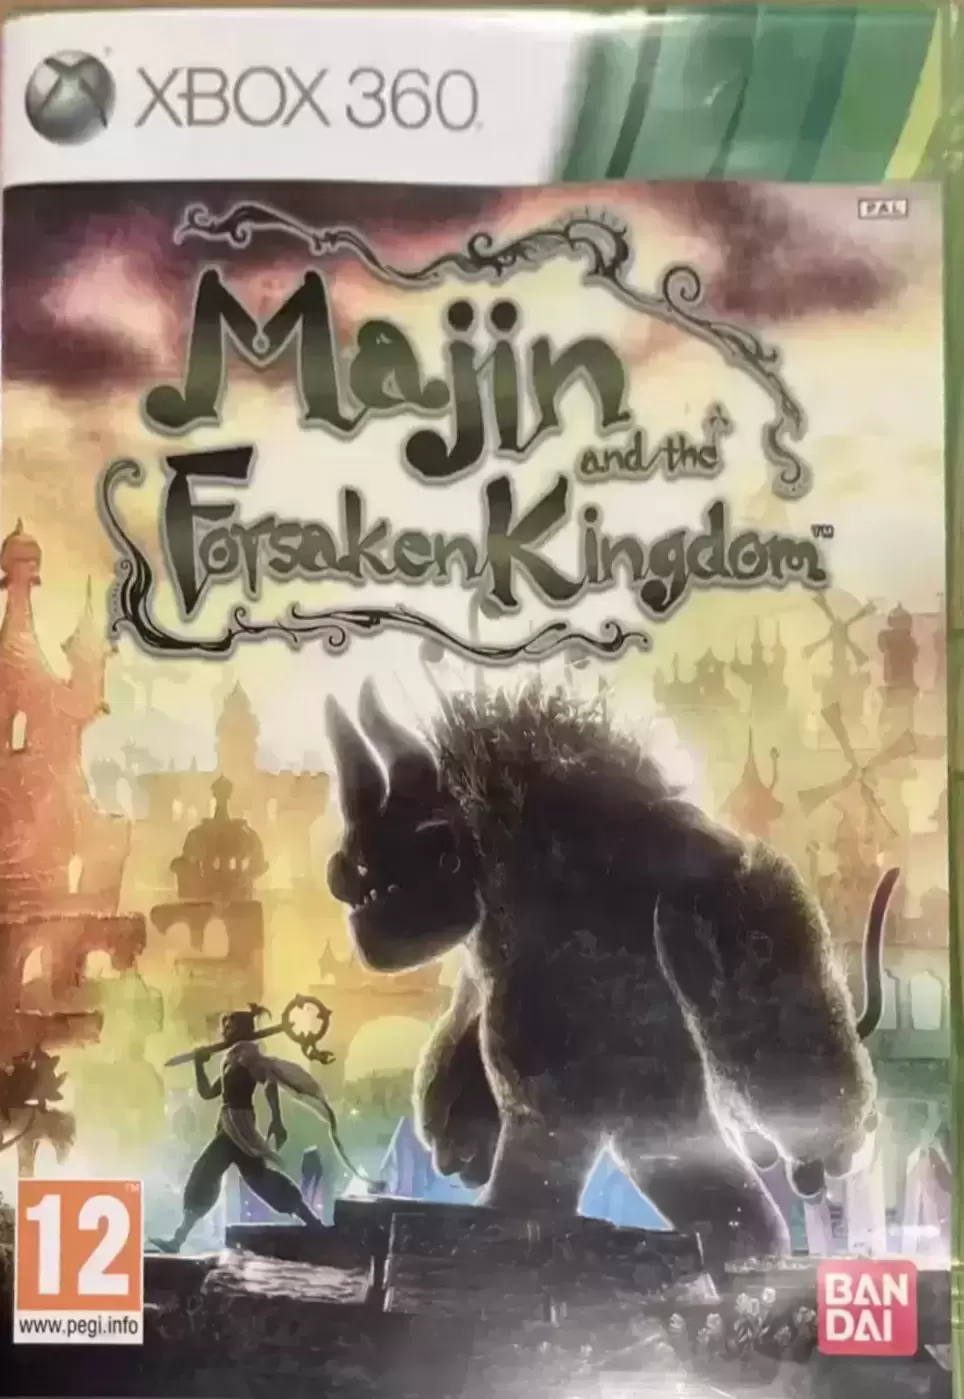 XBOX 360 Games - Majin and the Forsaken Kingdom